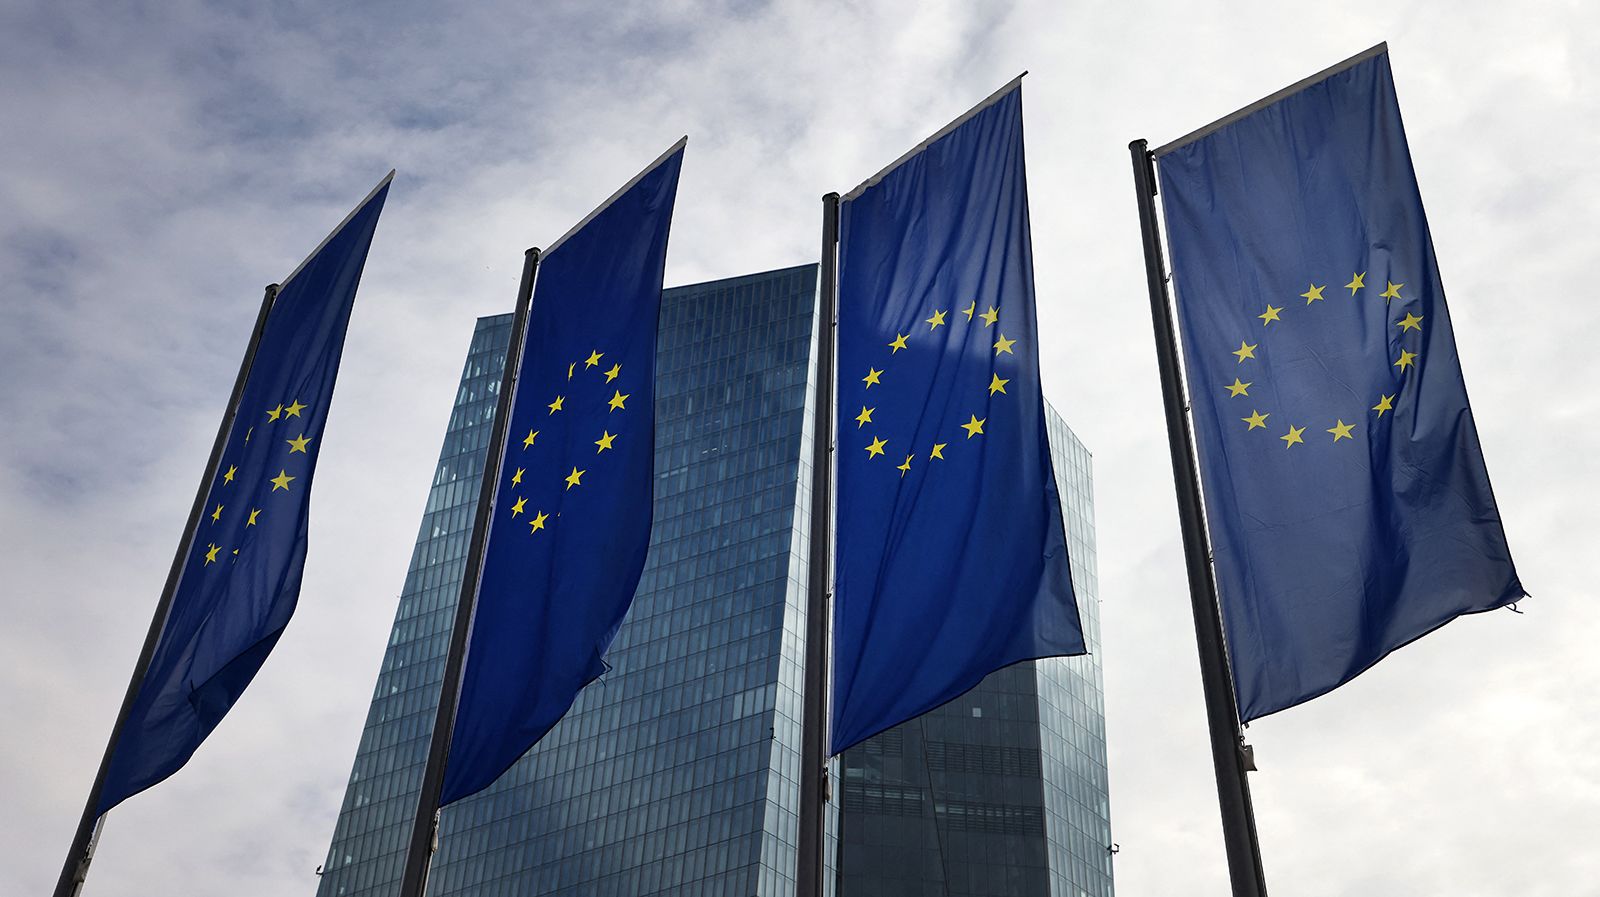 Αναλυτές: Οι ευρωπαϊκές τράπεζες είναι σταθερότερες από τις αμερικανικές